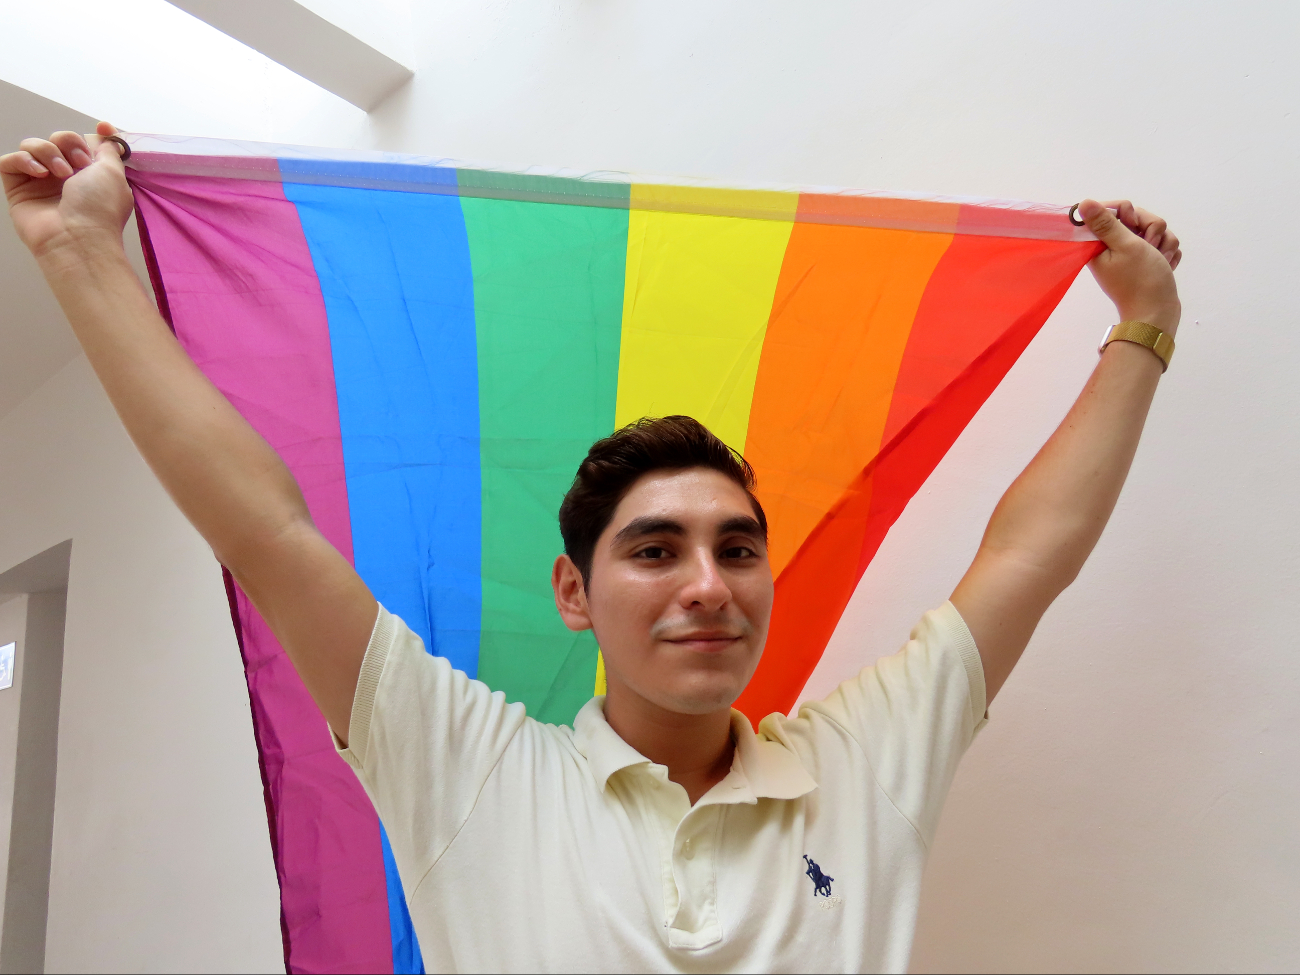 Roberto McDonald se identifica como una persona gay